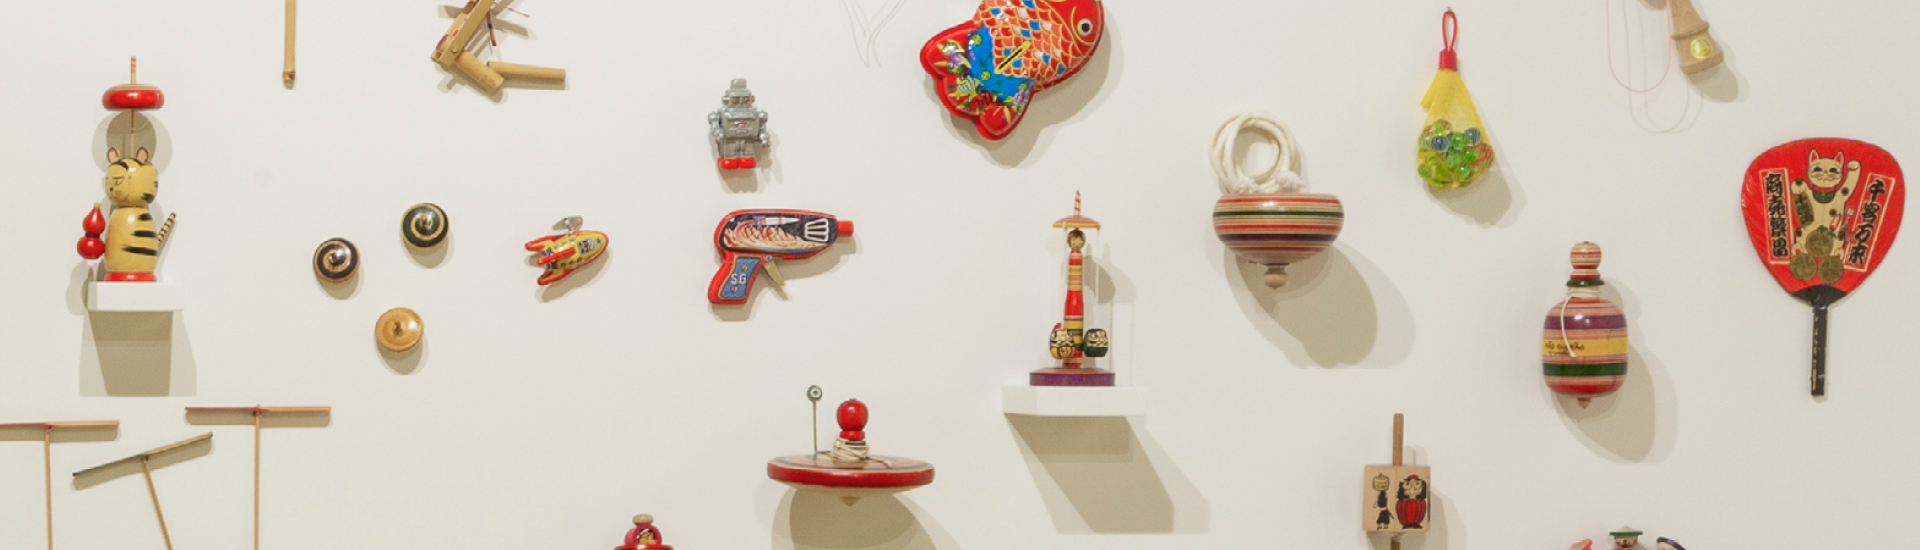 Brinquedos expostos em parede branca na exposição 'Doshin: os encantos dos brinquedos japoneses'